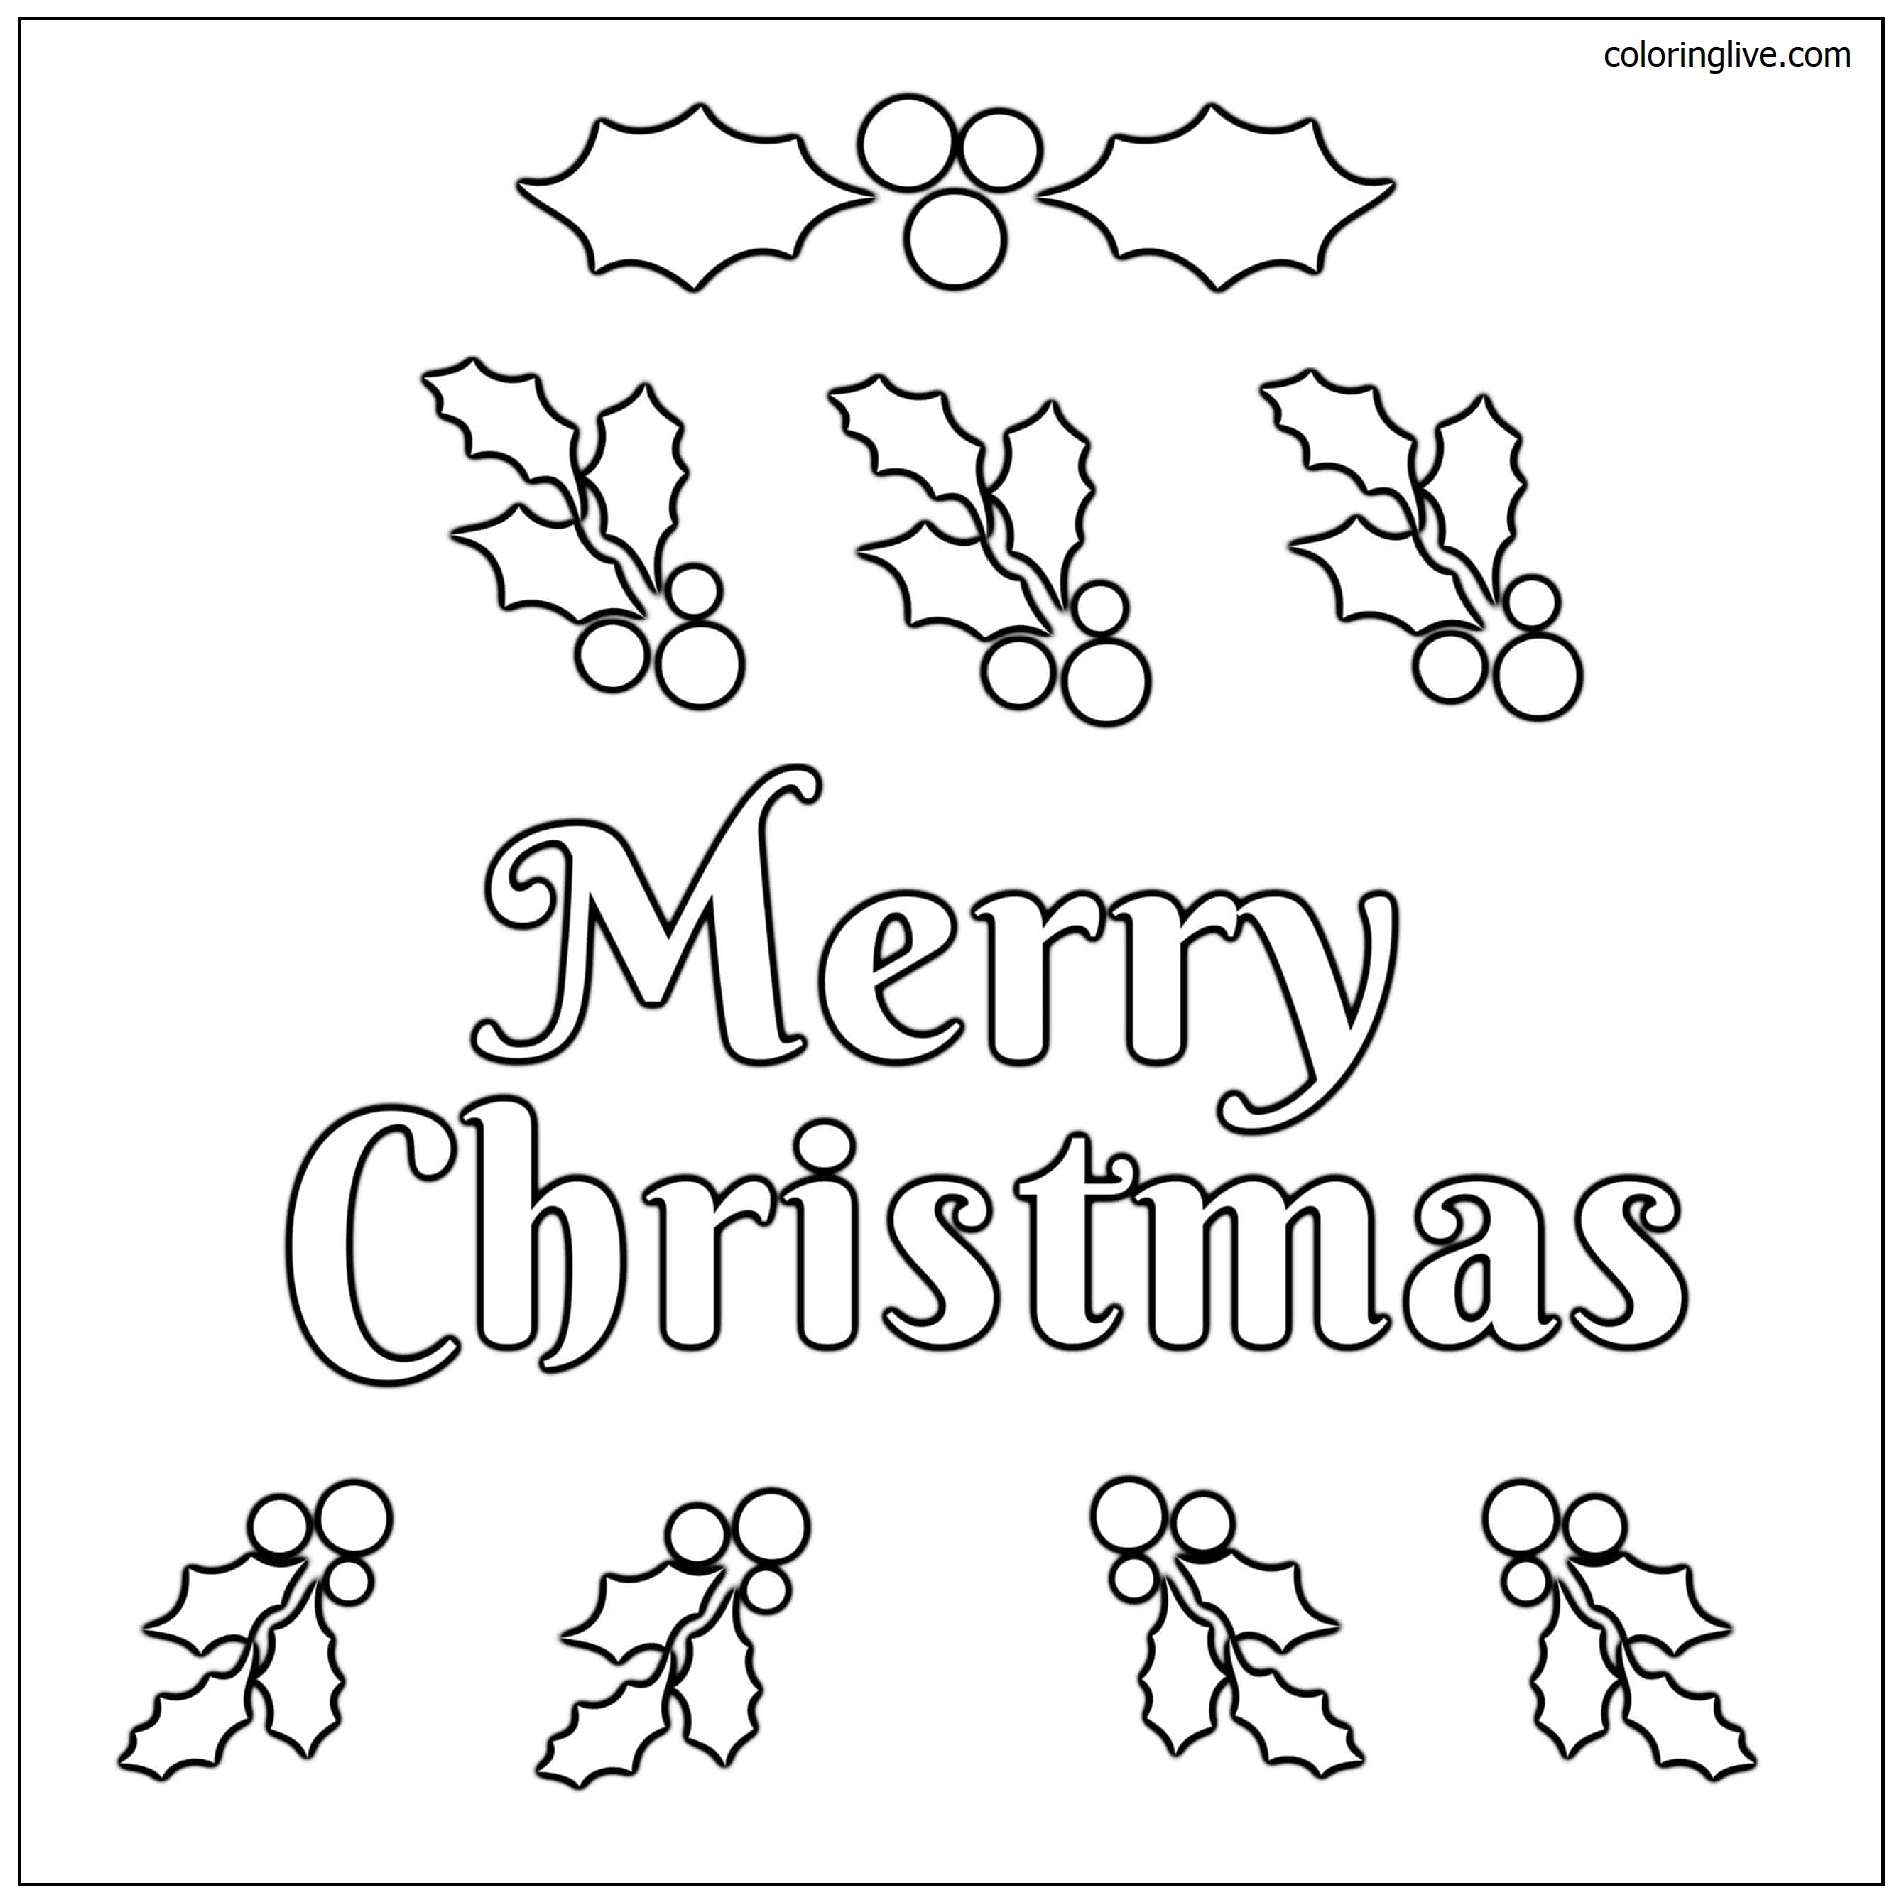 Printable Christmas wish  sheet Coloring Page for kids.